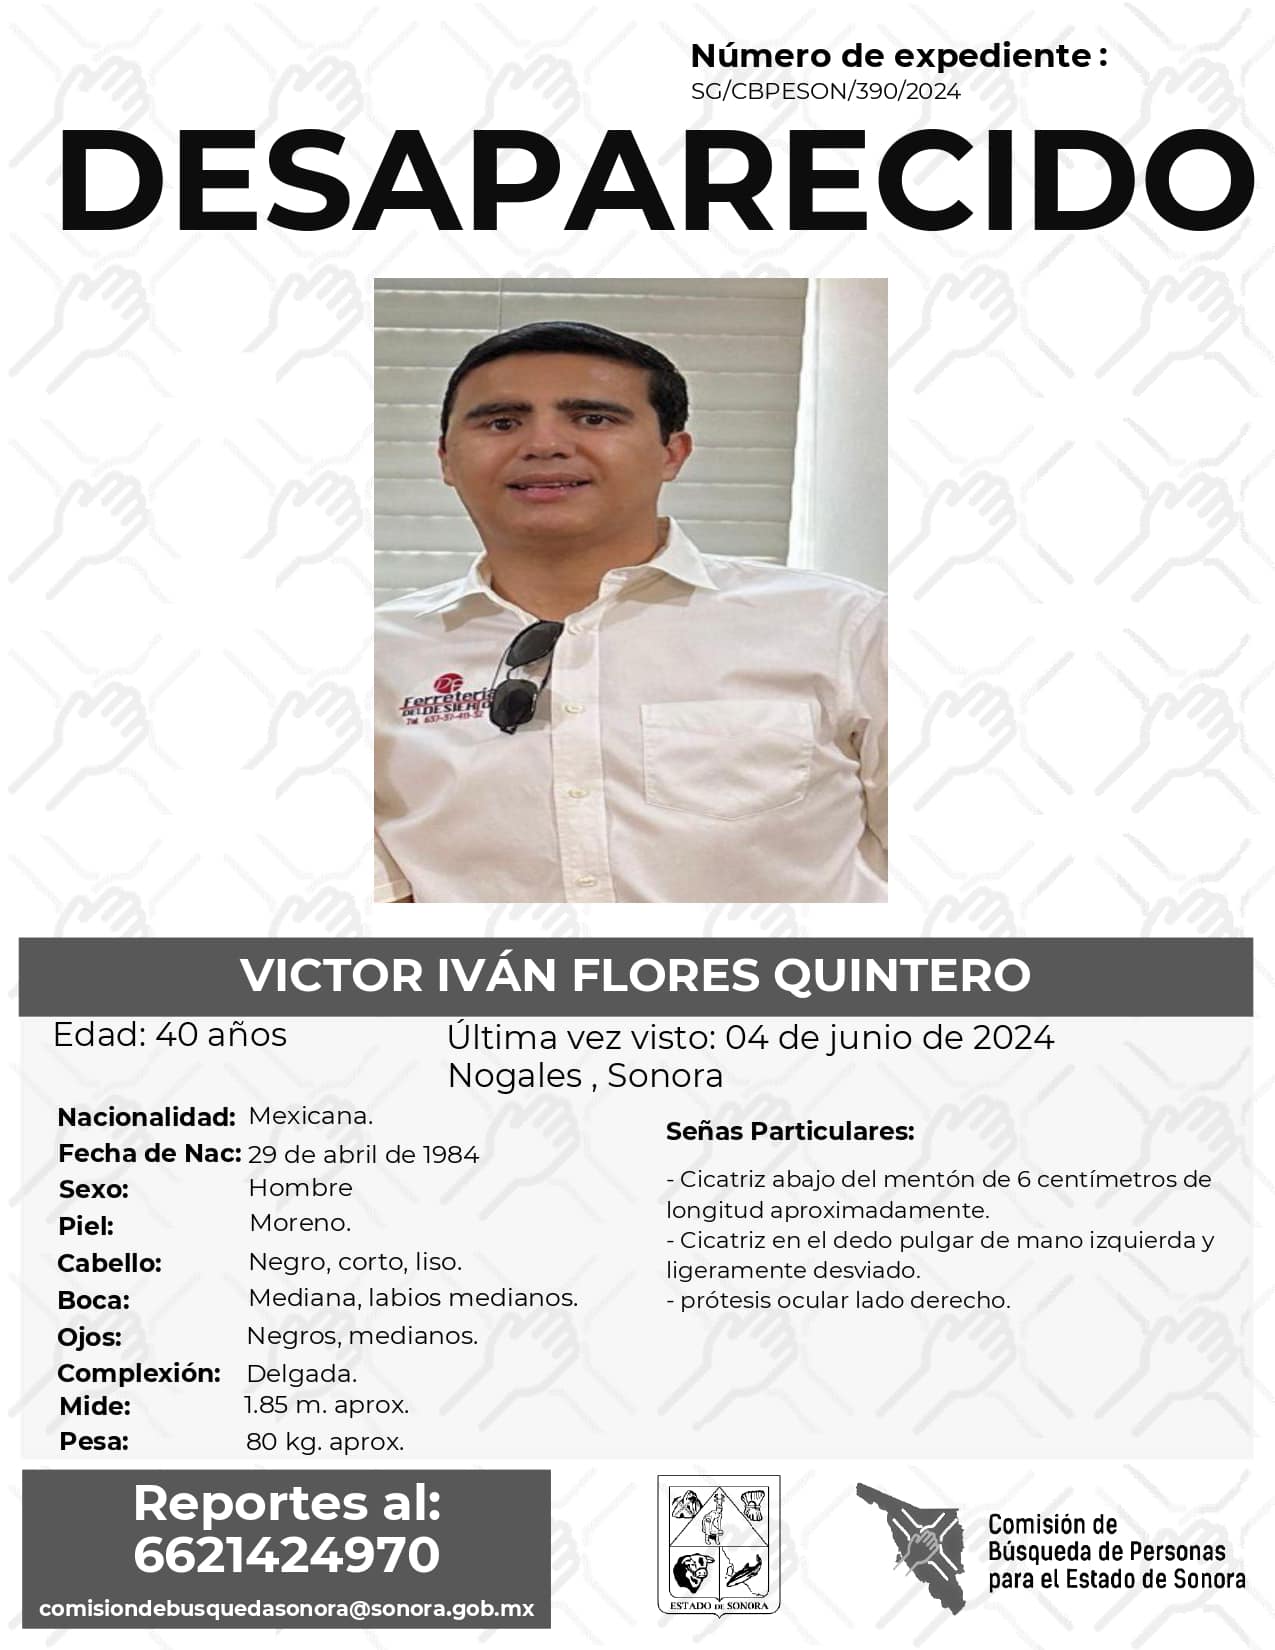 VICTOR IVAN FLORES QUINTERO - DESAPARECIDO